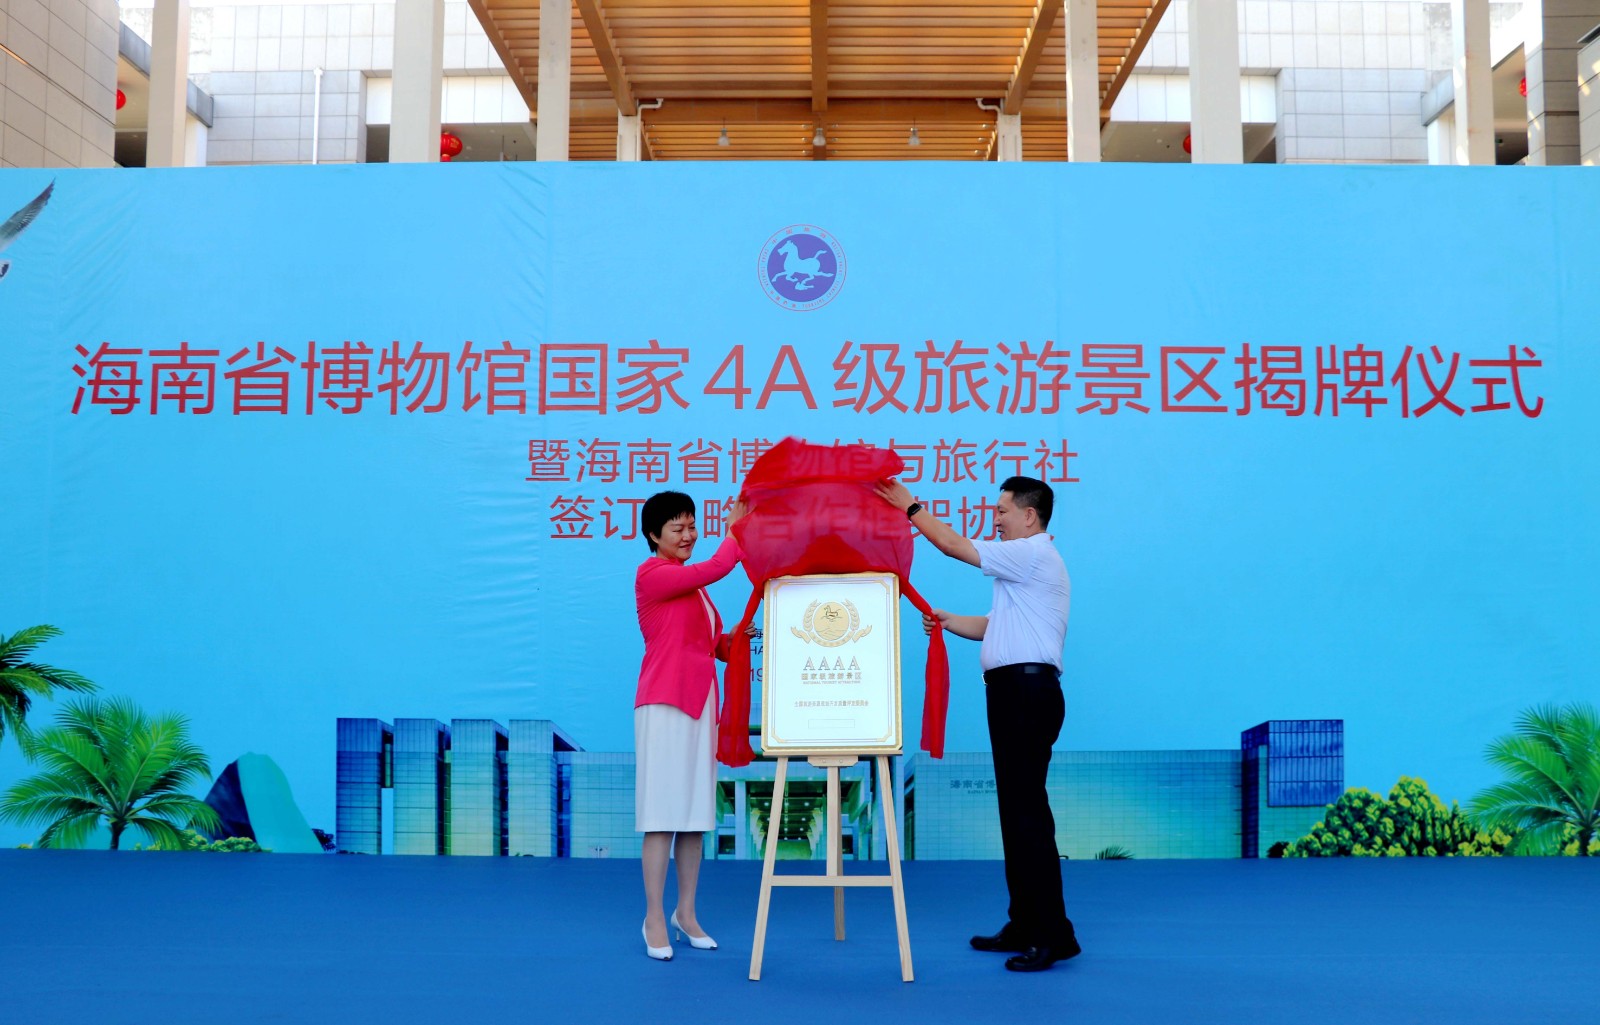 海南省博物馆国家4A级旅游景区揭牌仪式在海南省博物馆举行